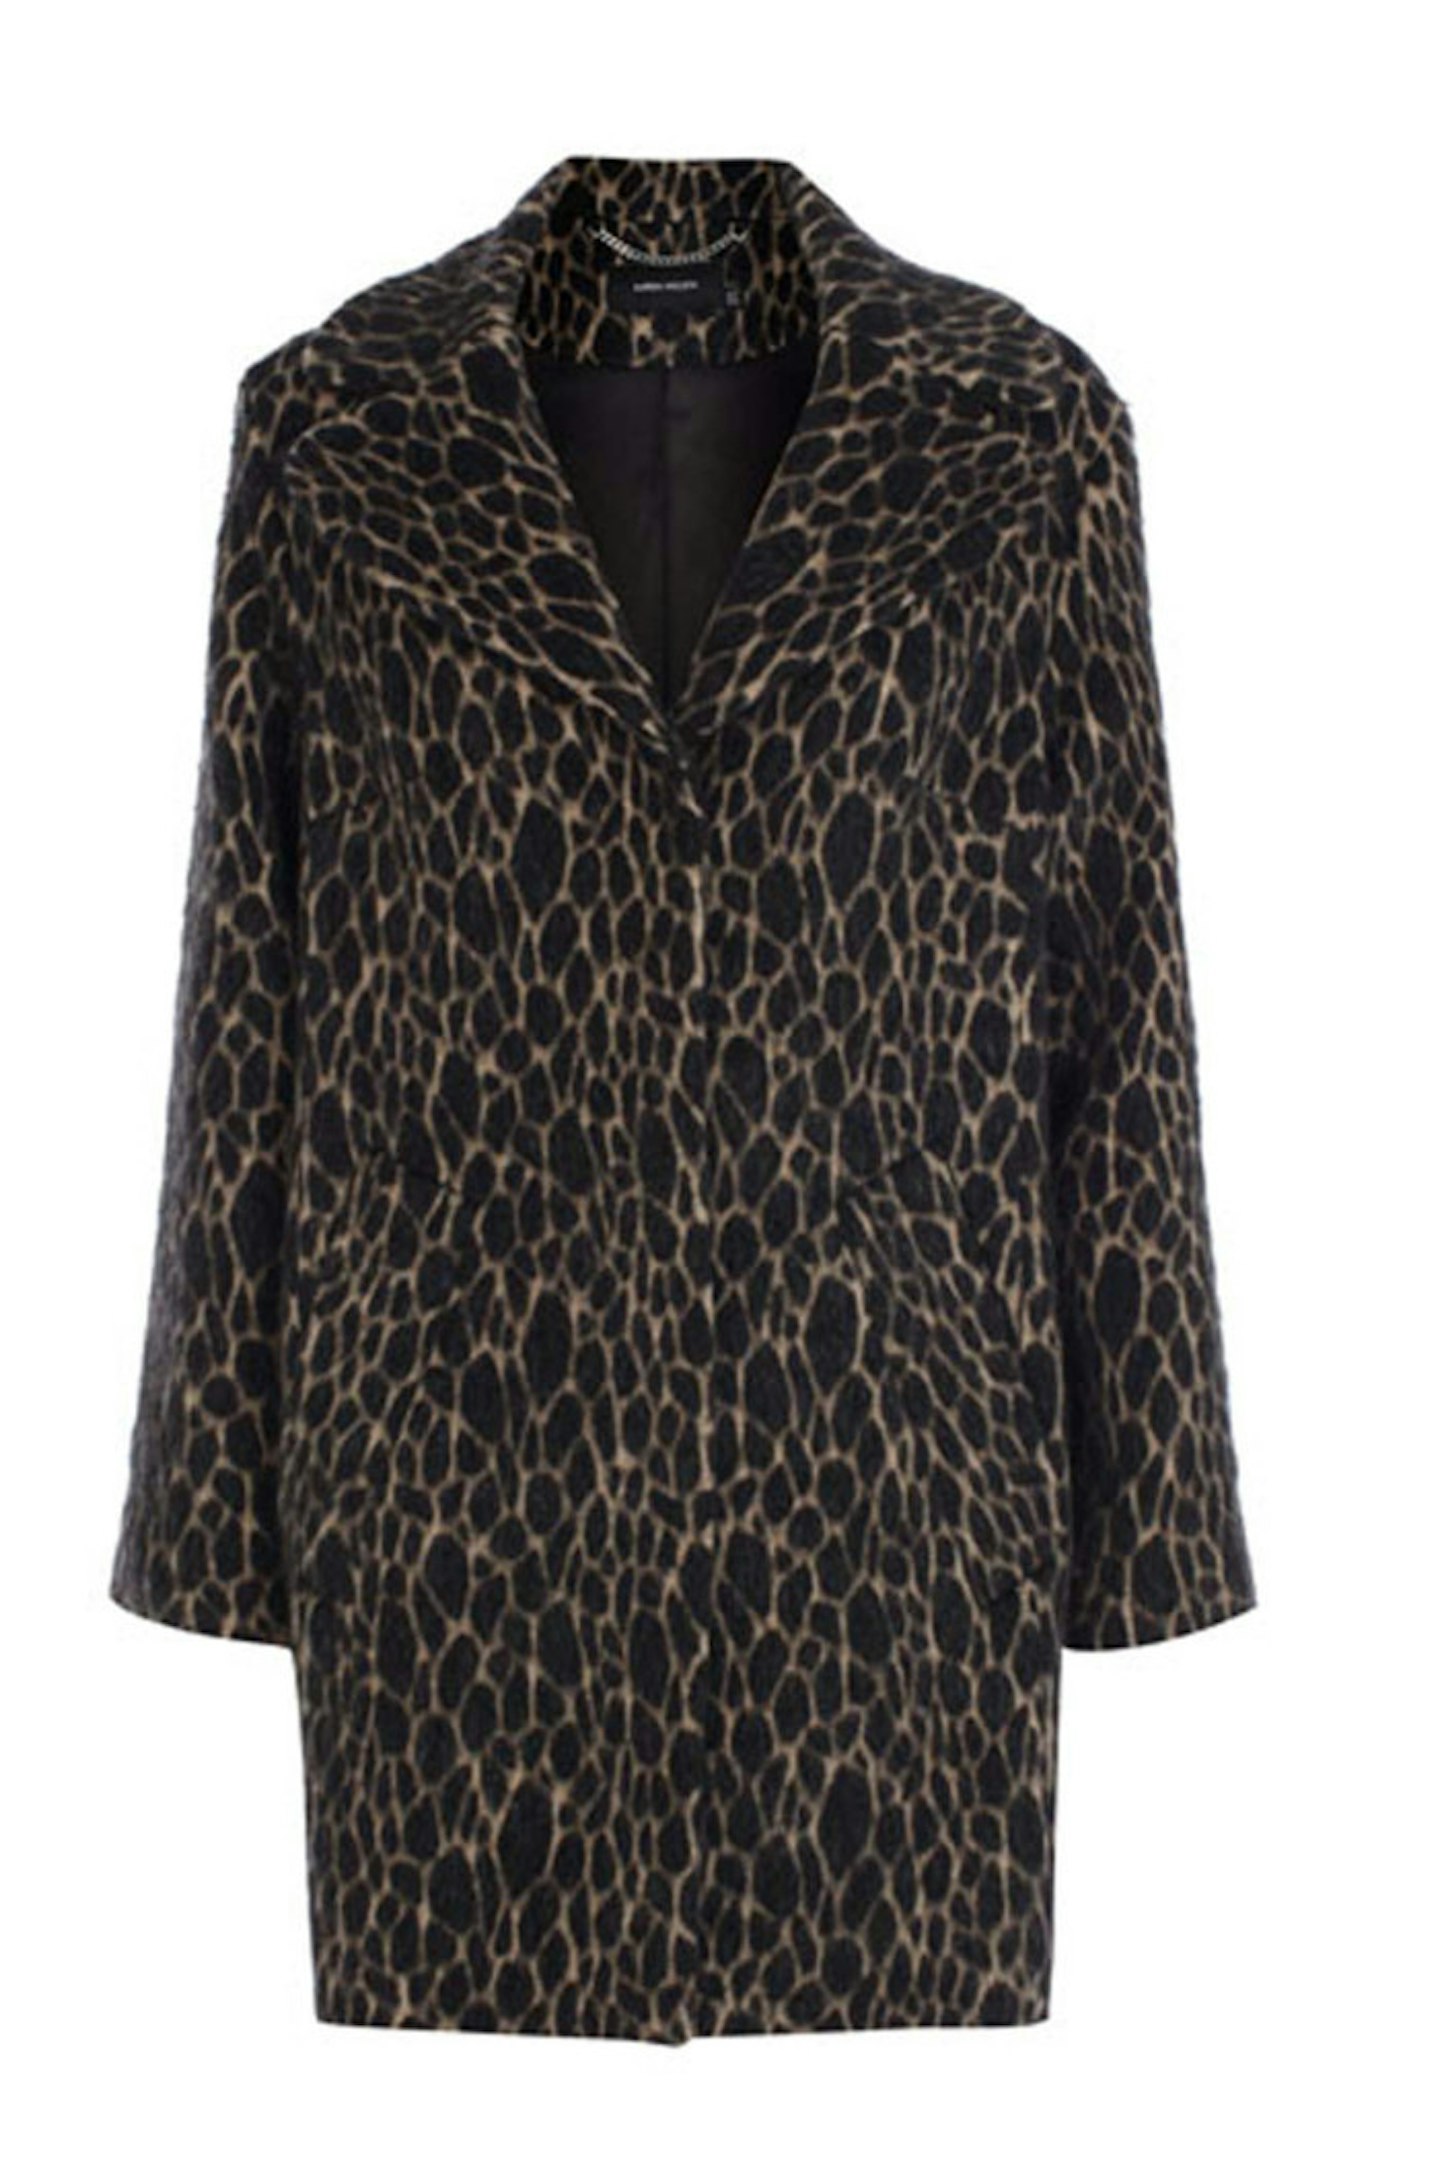 Leopard Print Coat, £350, Karen Millen